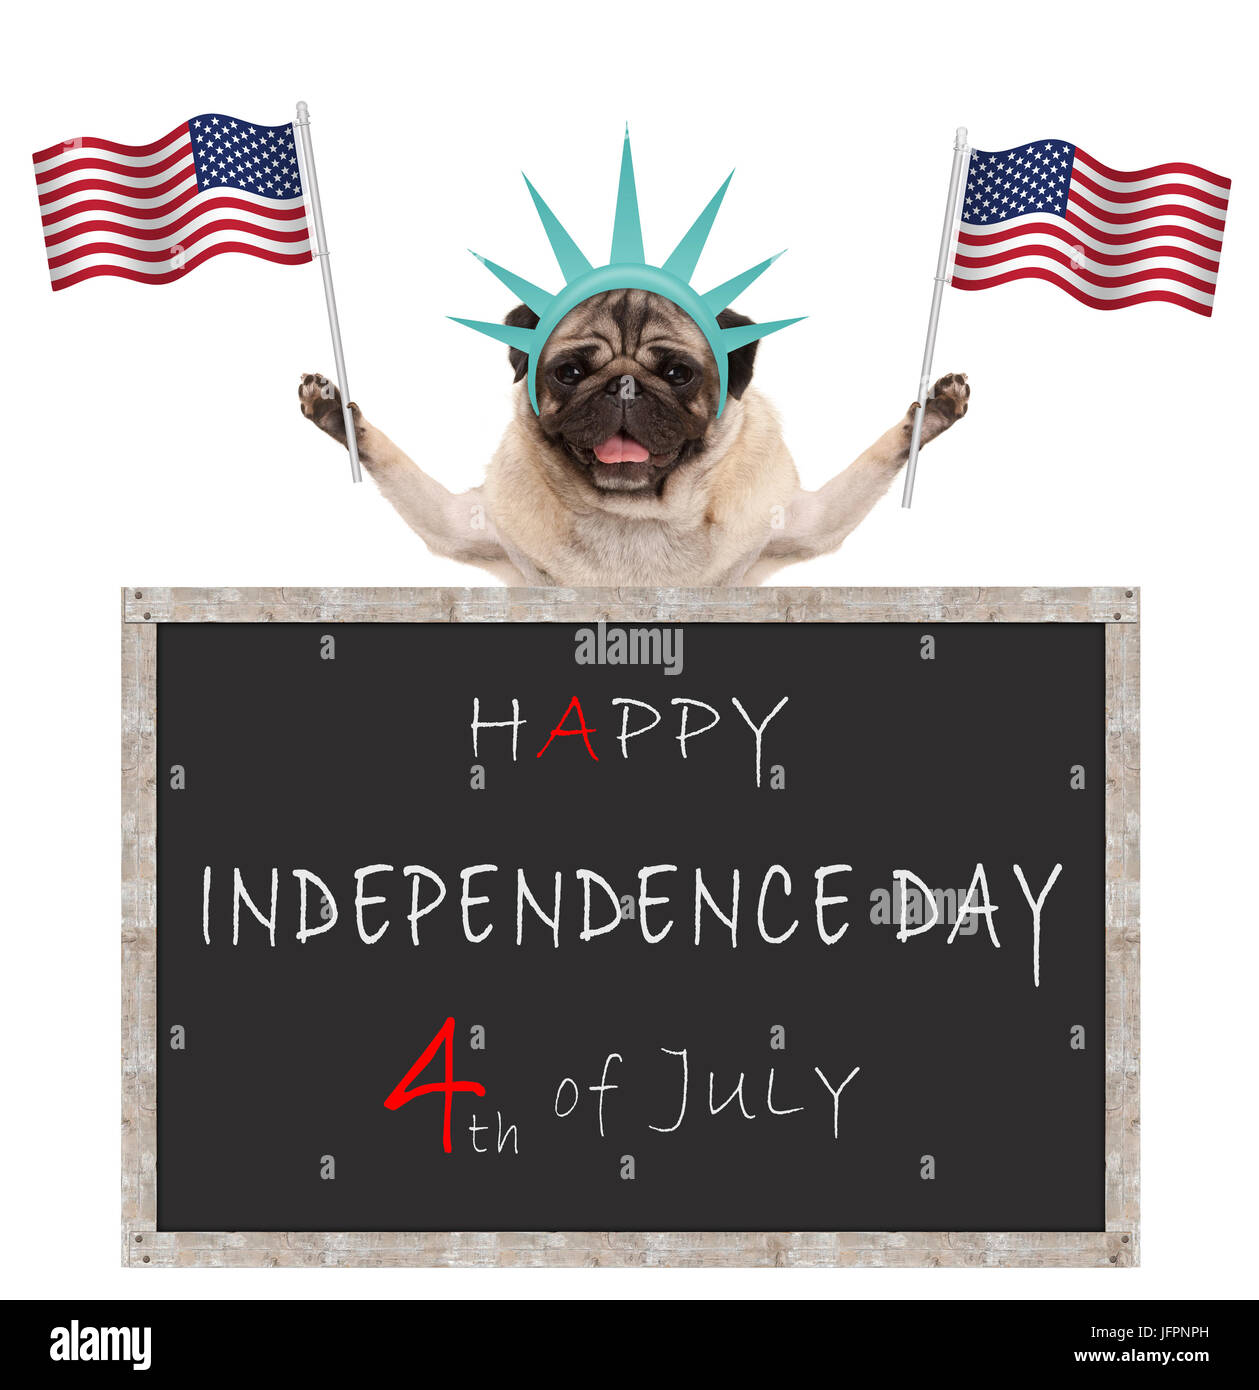 Cachorro de pug con bandera americana y la estatua de la libertad corona, detrás de pizarra con texto feliz 4 de julio y el día de la independencia Foto de stock